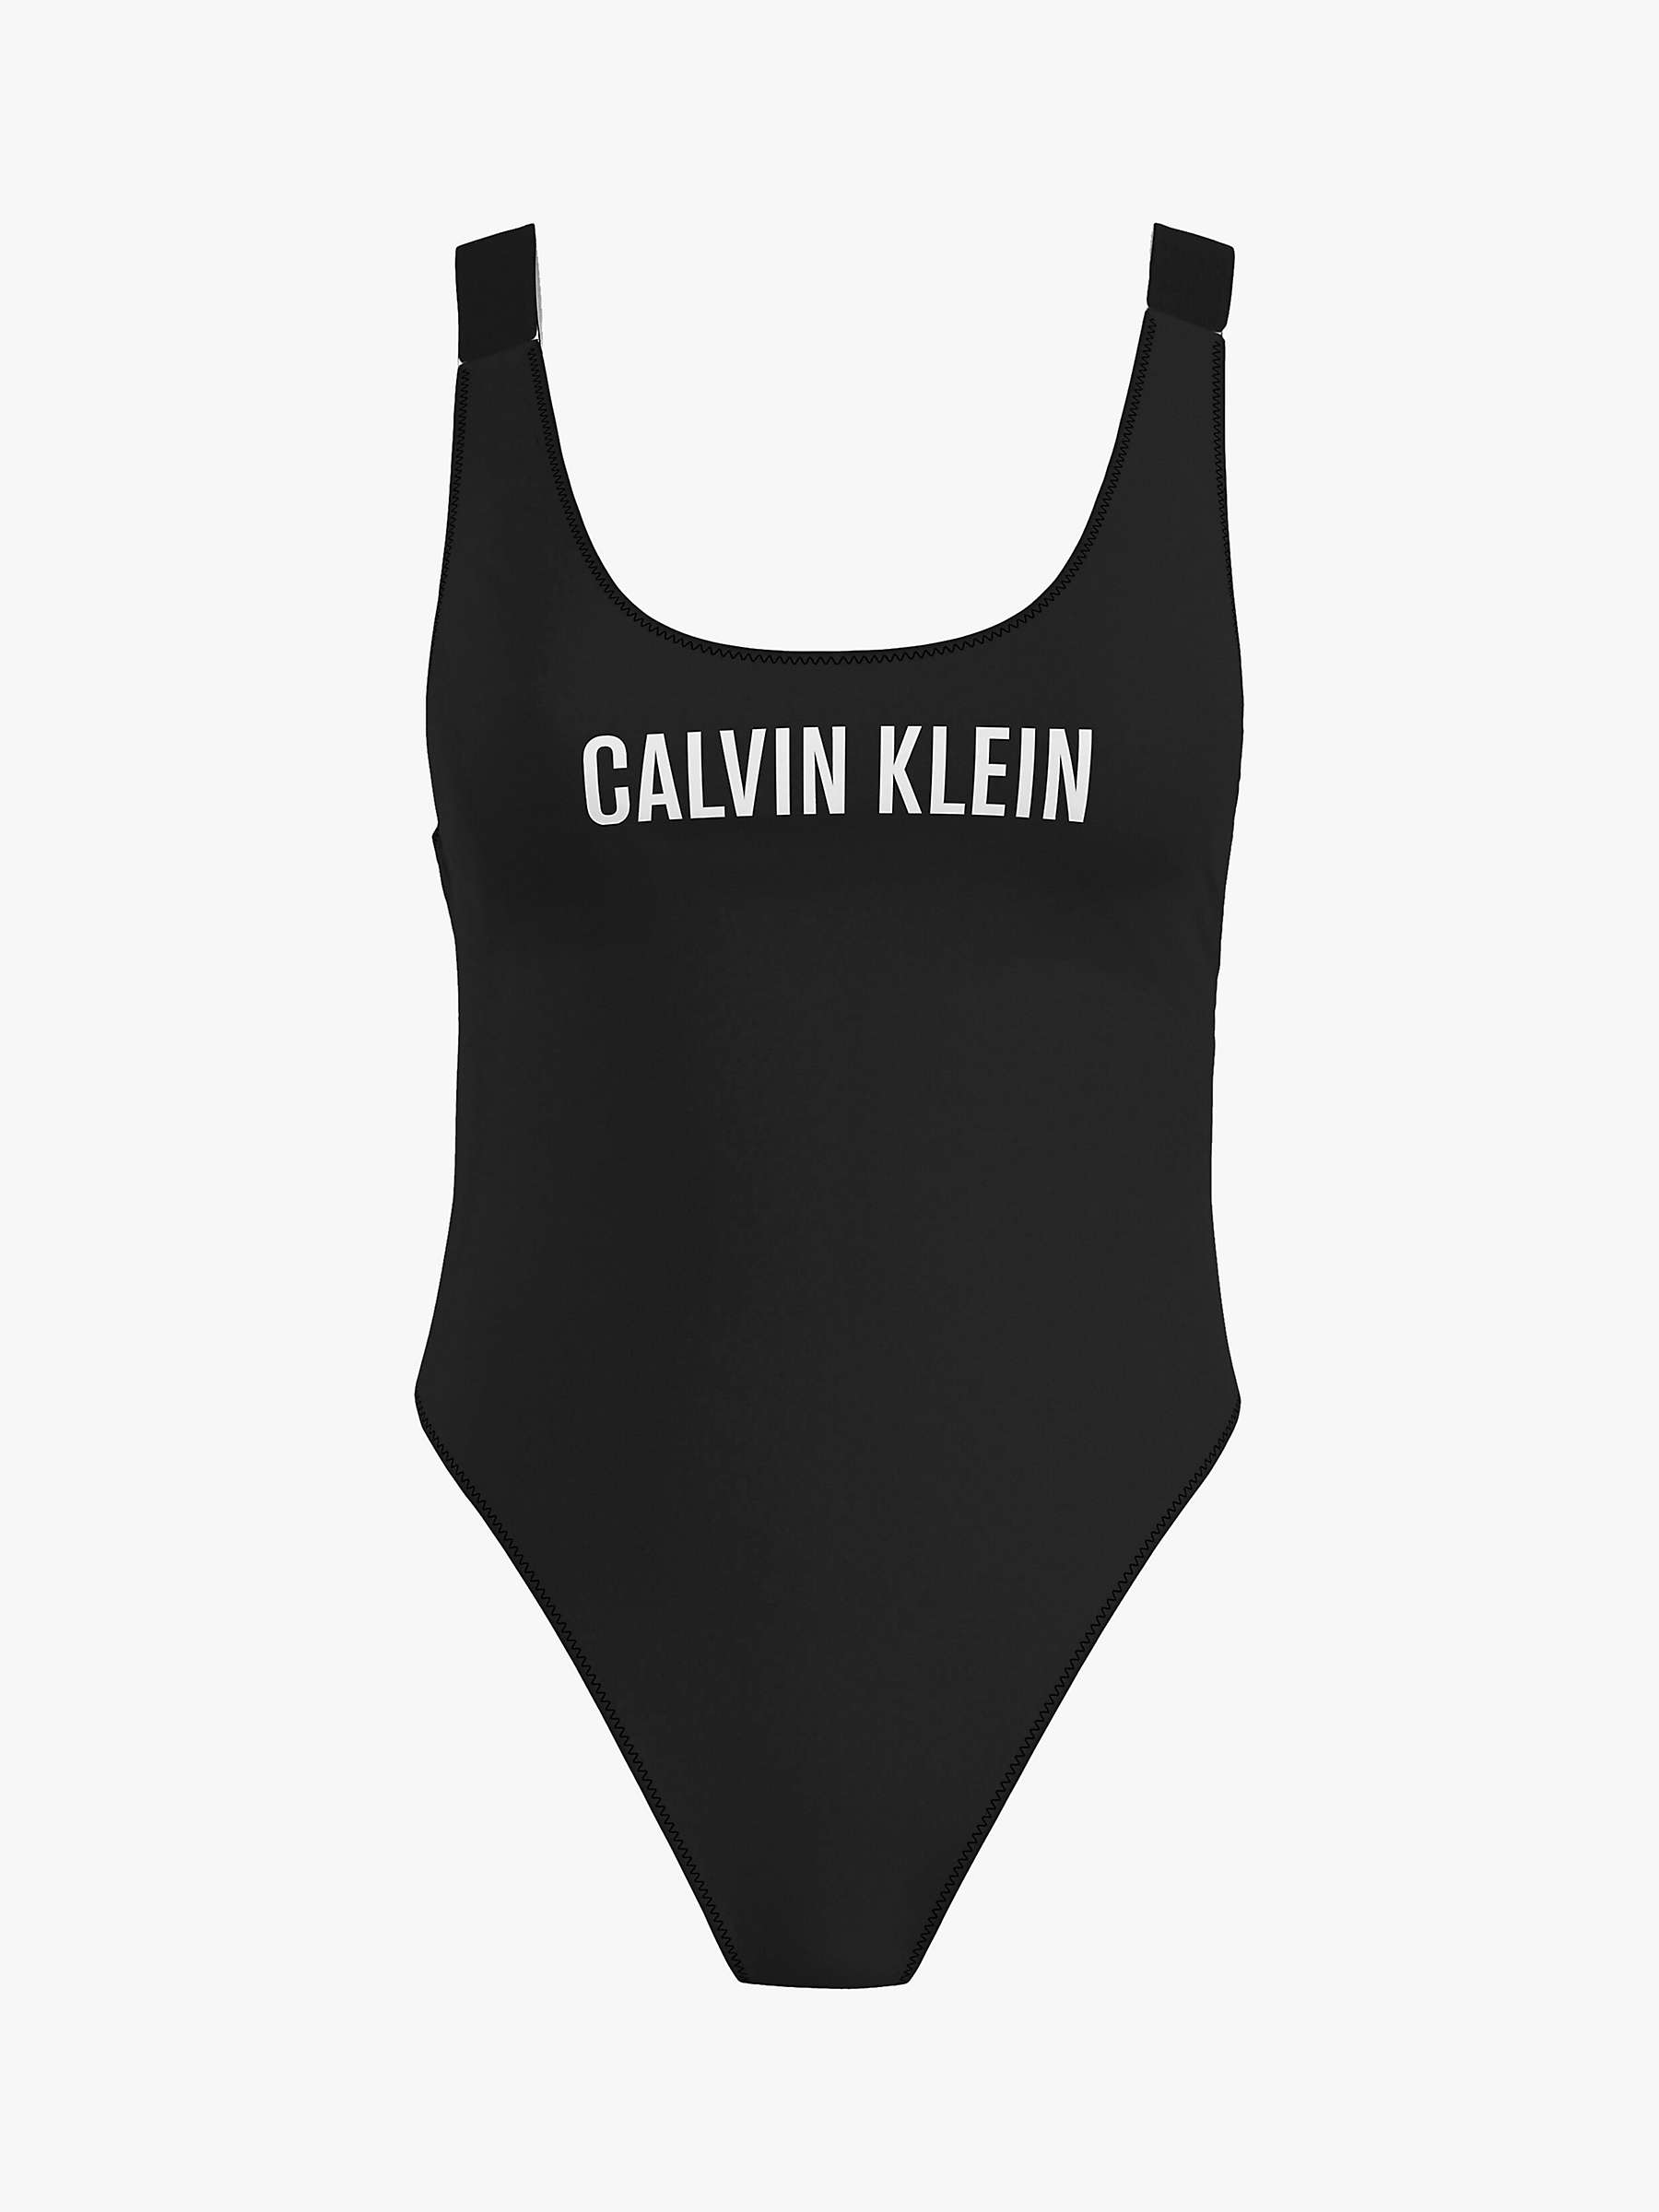 Calvin Klein Intense Power Scoop Back Swimsuit, Black at John Lewis ...